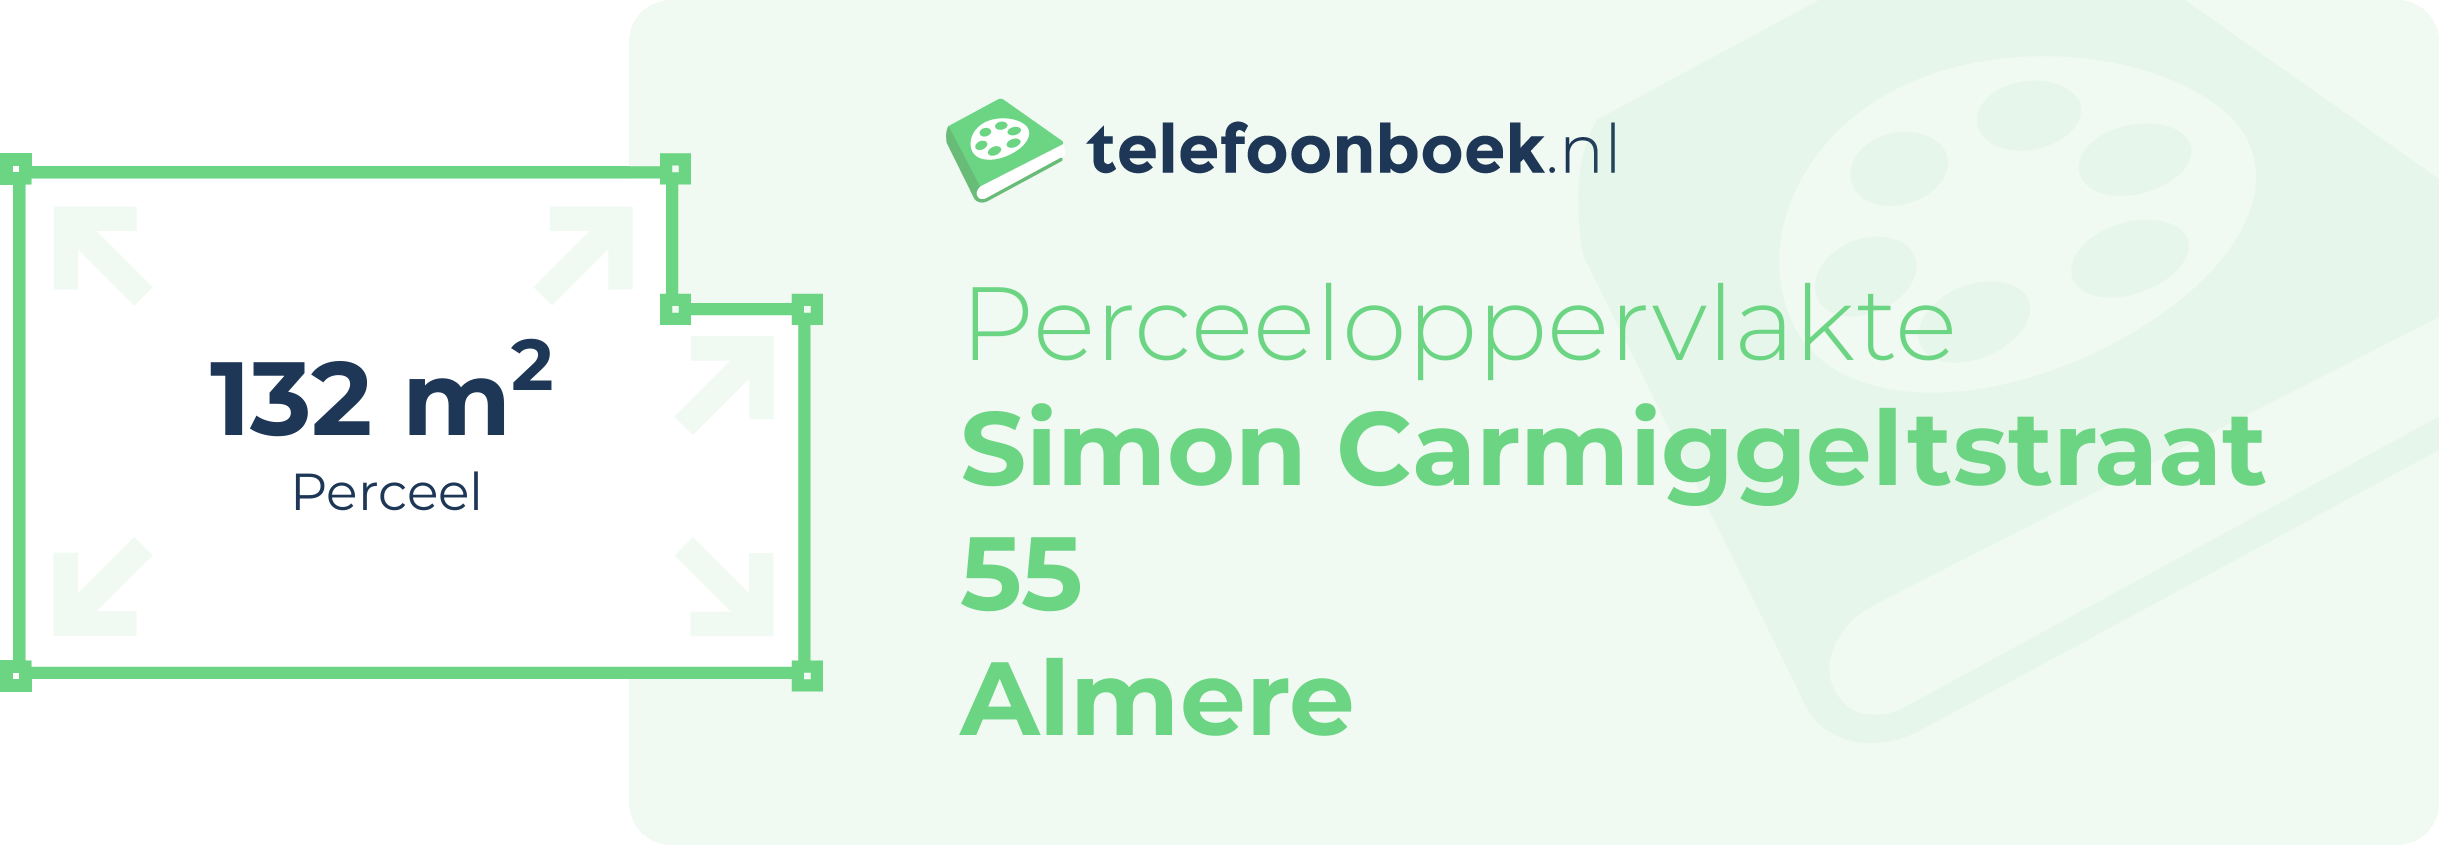 Perceeloppervlakte Simon Carmiggeltstraat 55 Almere